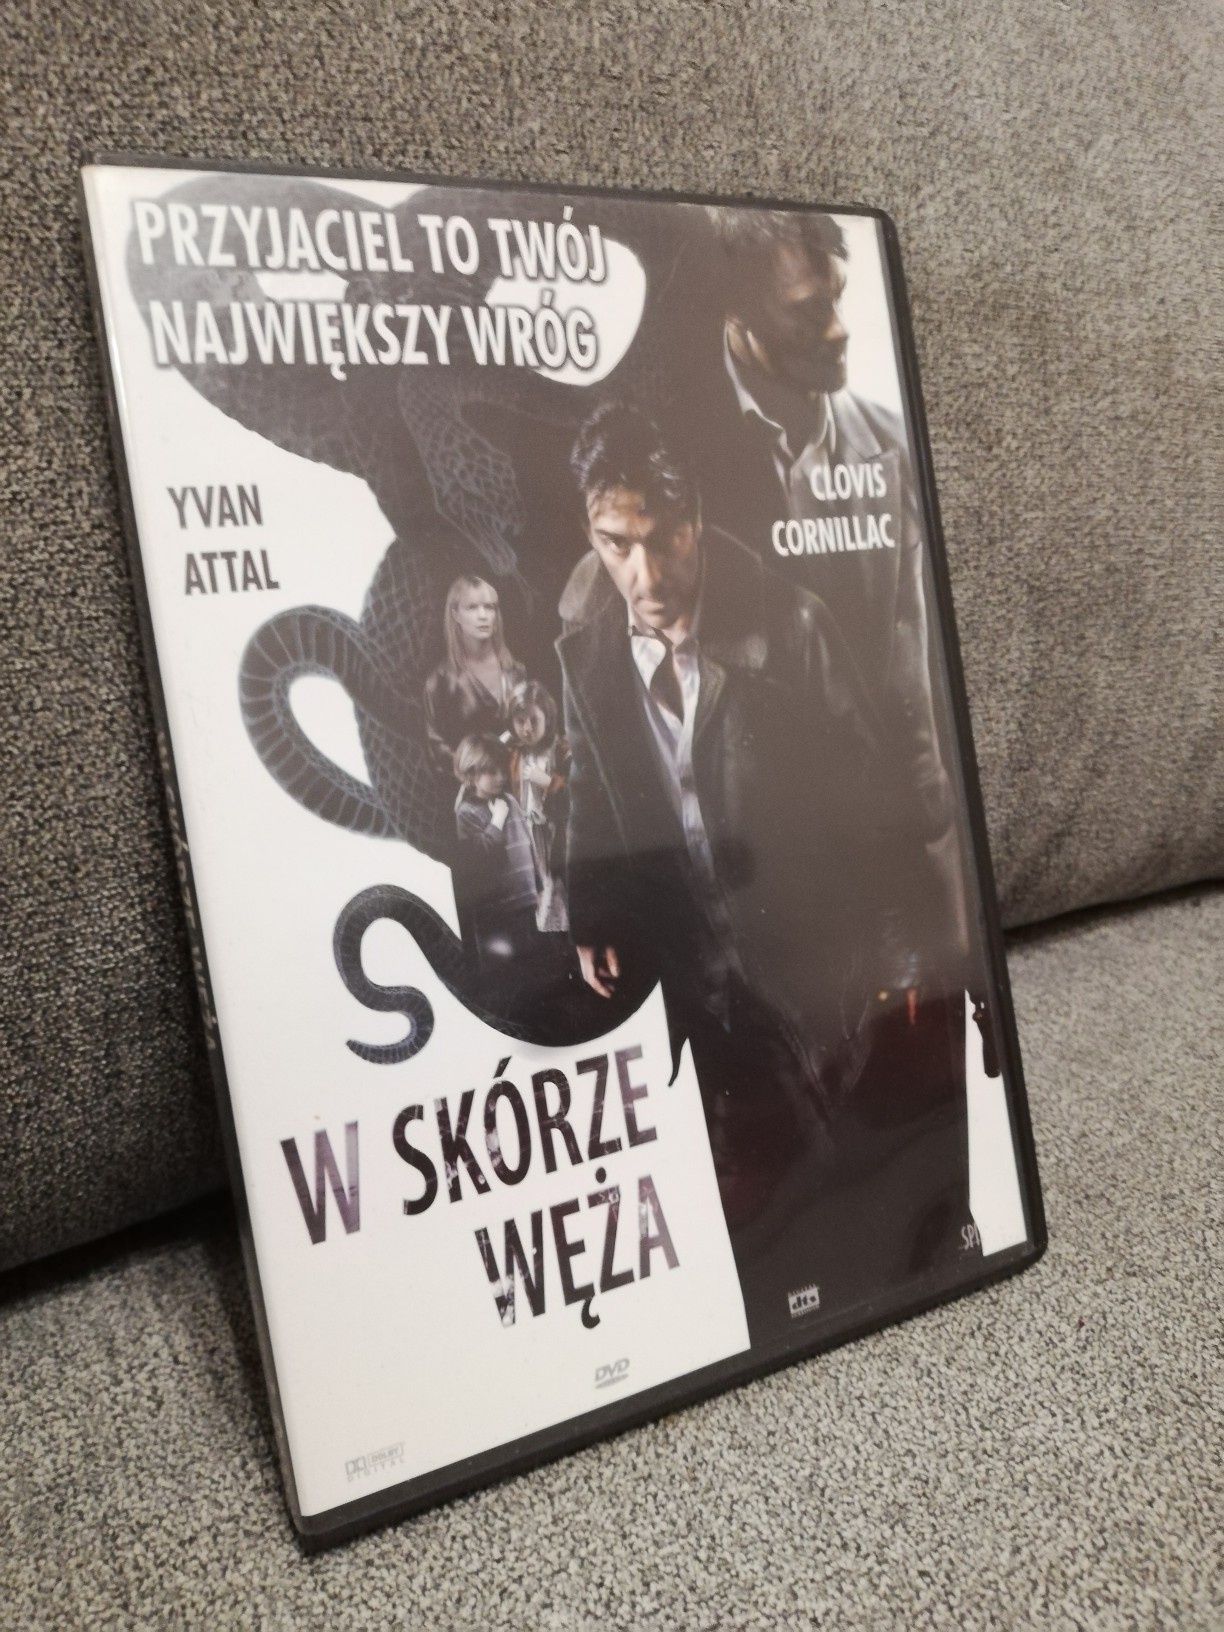 W skórze węża DVD Kraków